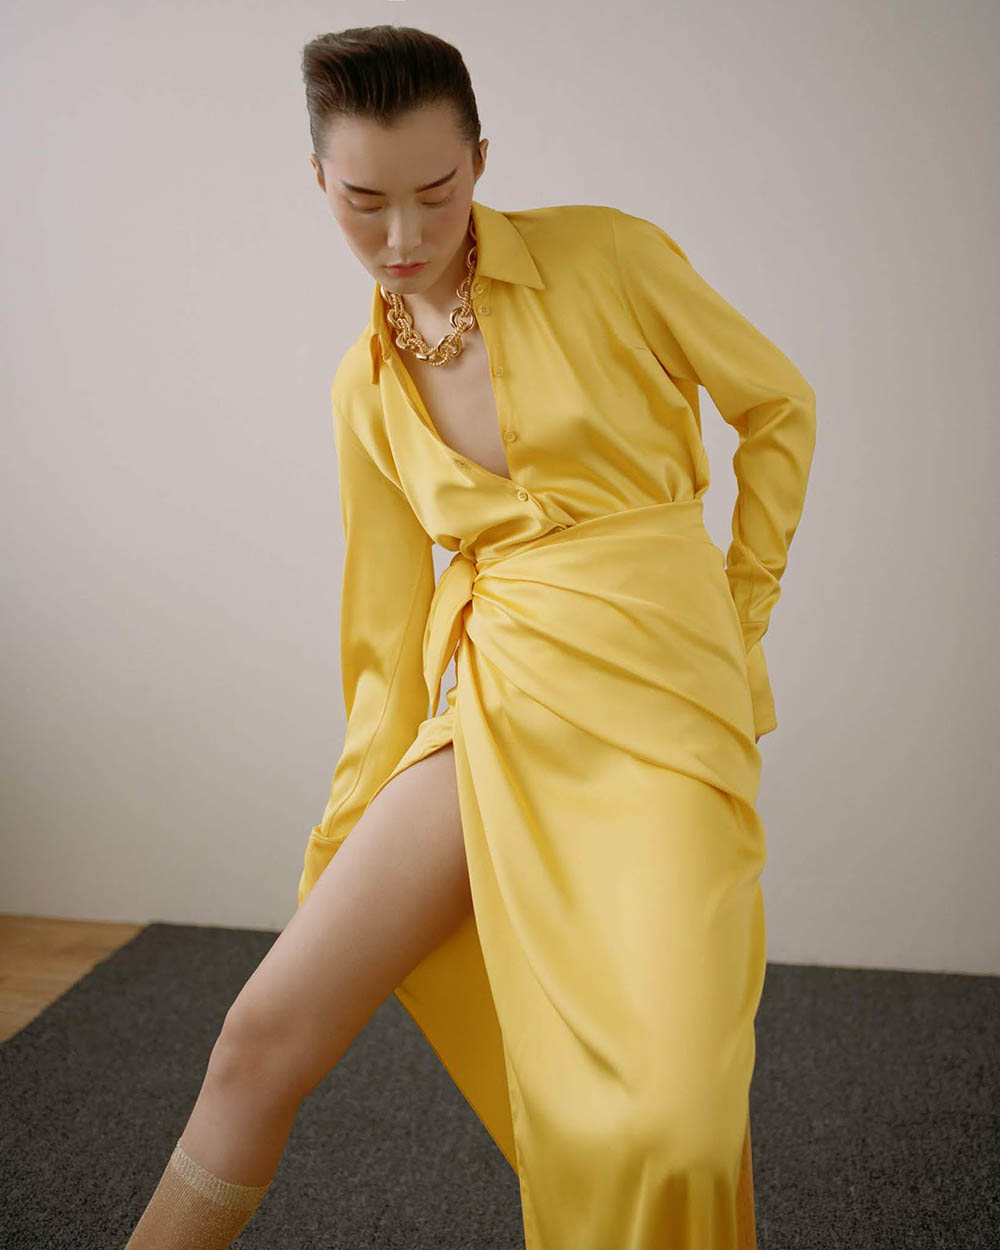 Wangy and Chunjie Liu by Zoltan Tombor for Vogue Hong Kong May 2019